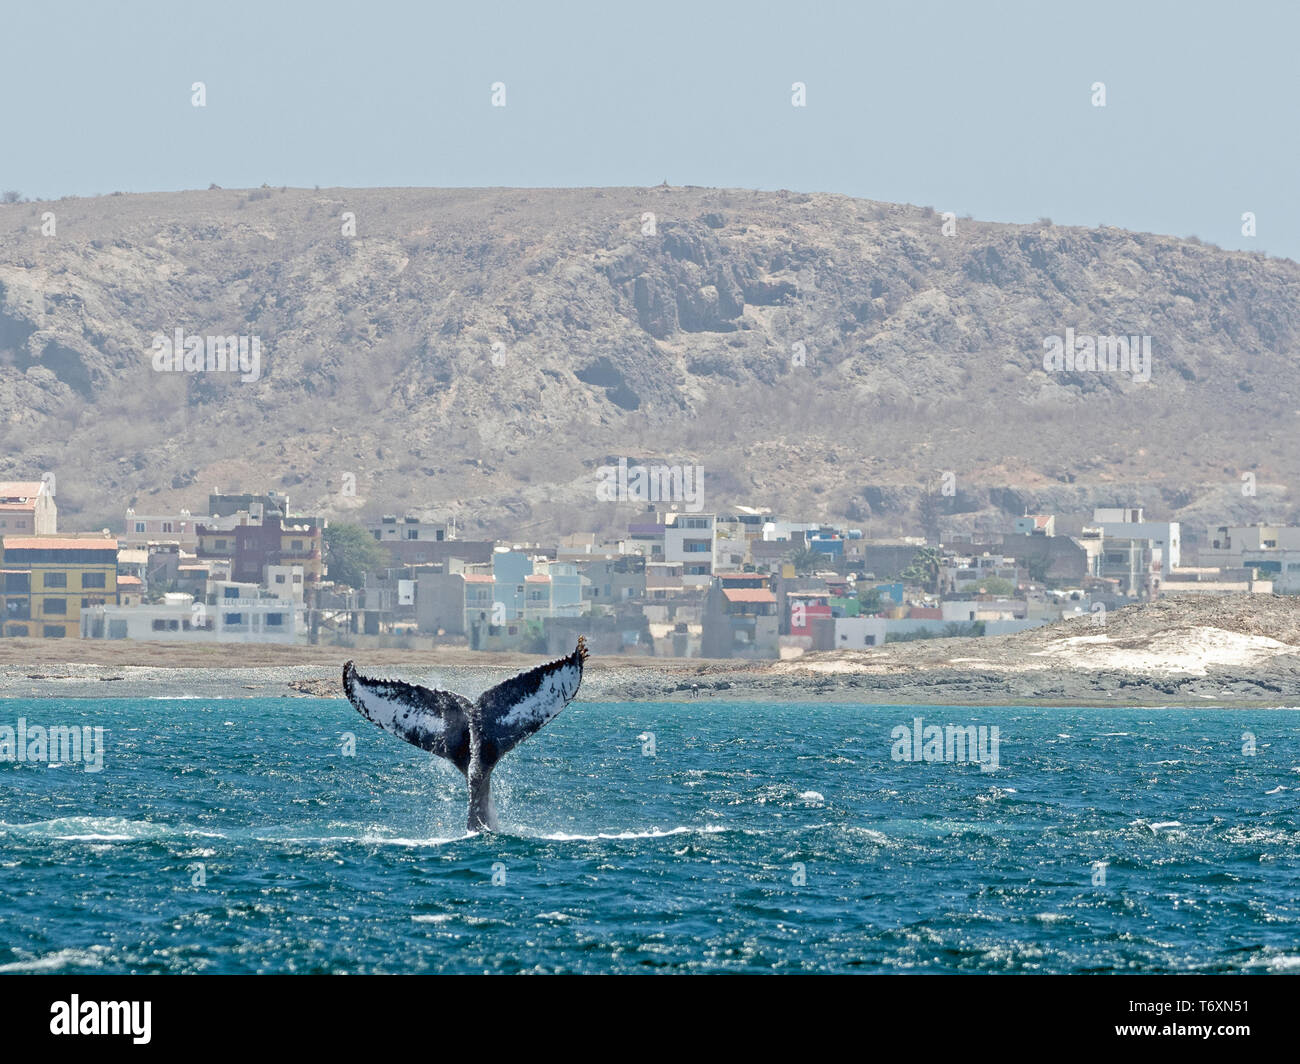 Queue de baleine à bosse (Megaptera novaeangliae) avec la ville de Sal Rei dans l'arrière-plan, Boa Vista, Cap Vert Banque D'Images